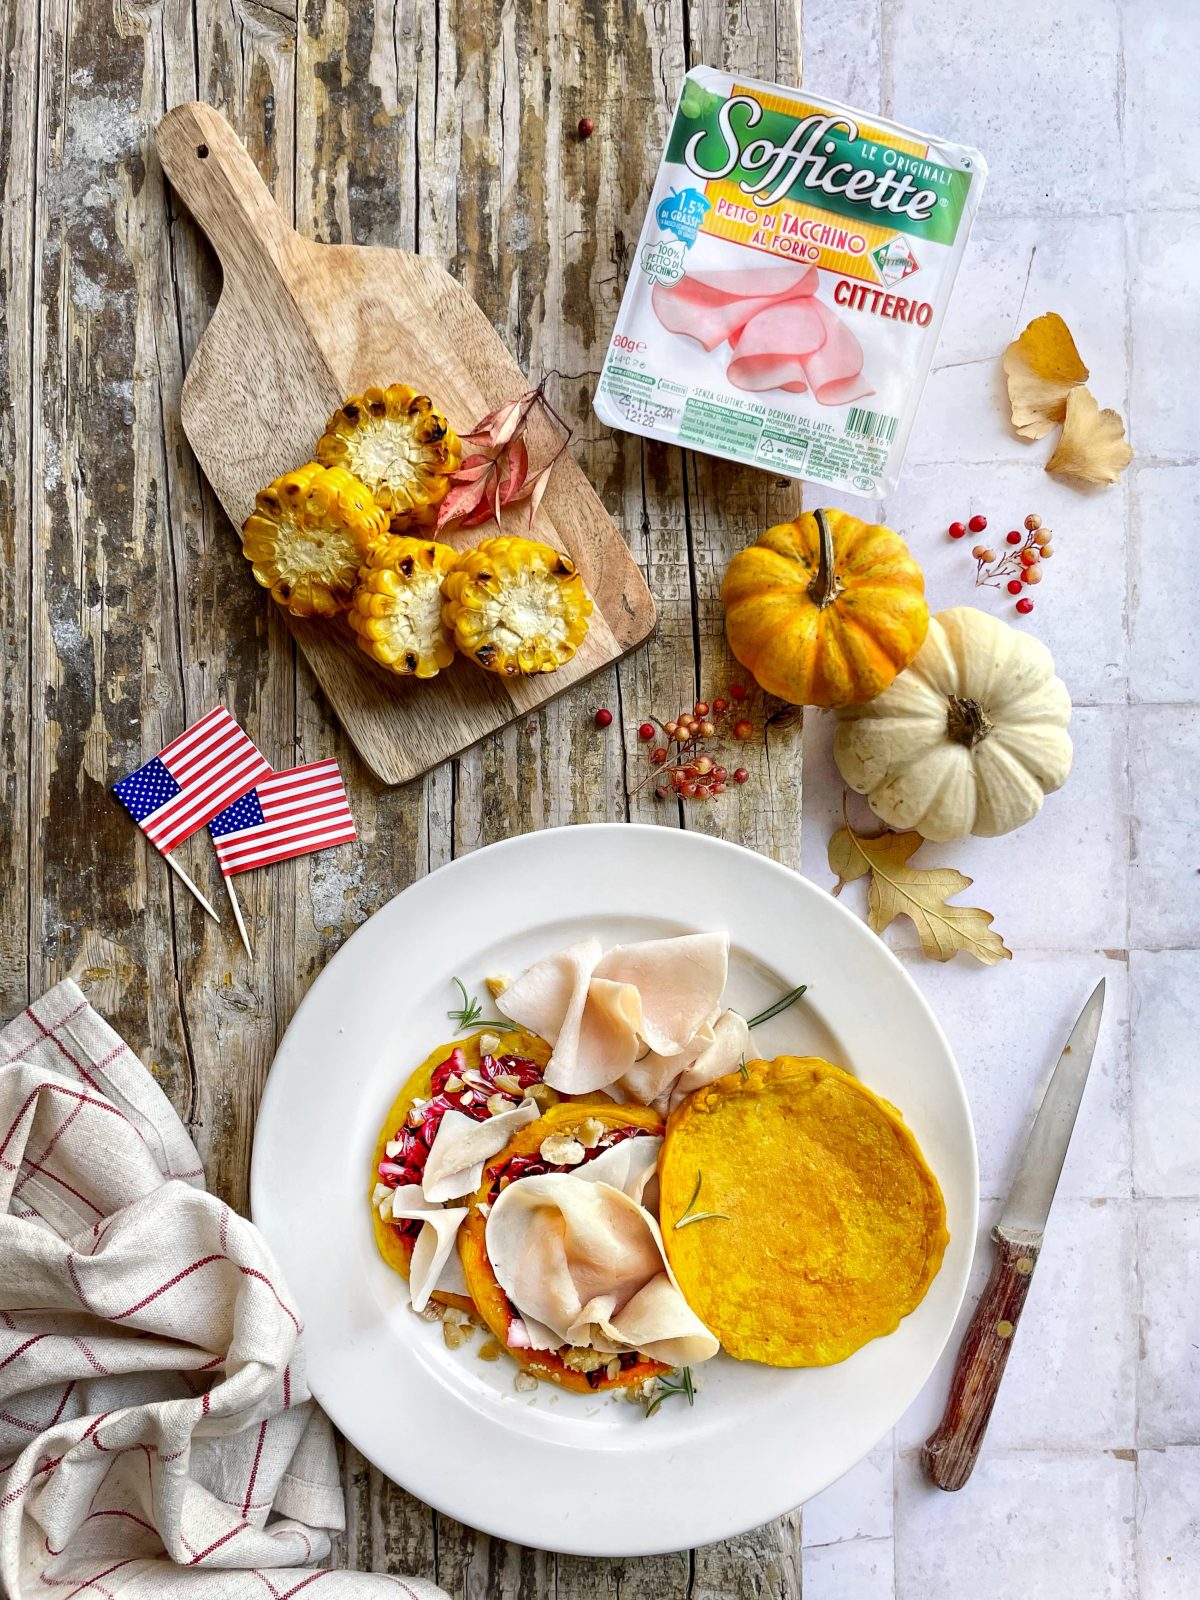 Thanksgiving all’italiana: una ricetta italo-americana ideata per celebrare il giorno del Ringraziamento, festa nazionale degli Stati Uniti